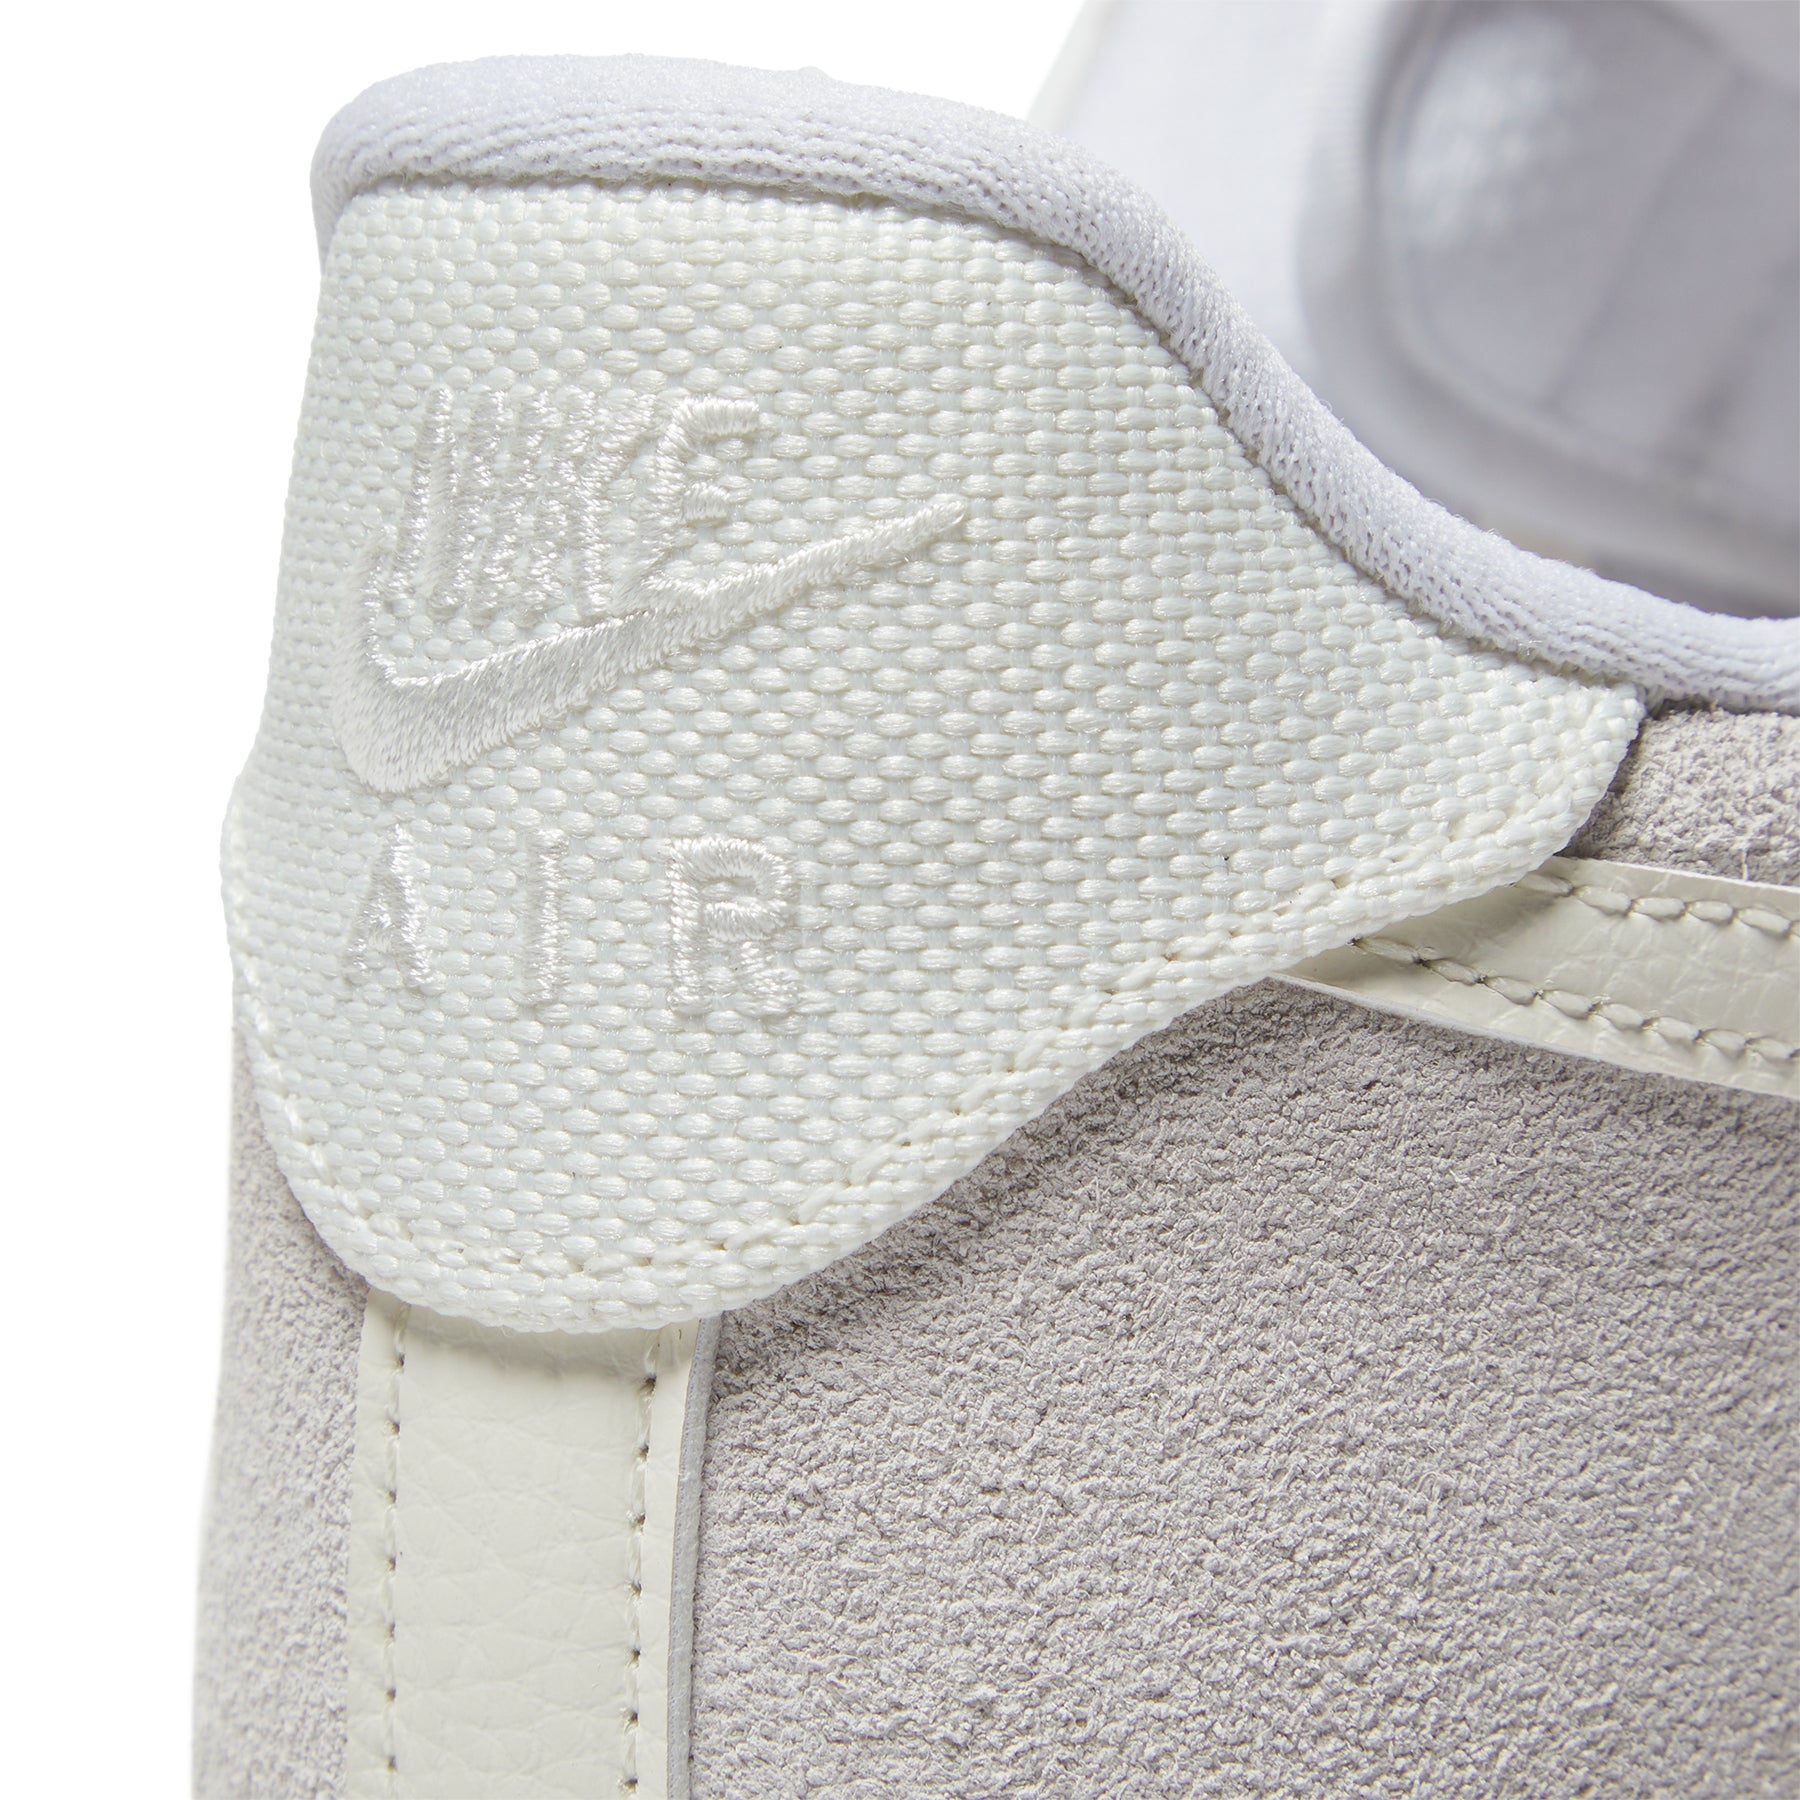 Nike Air Force 1 LV8 'White/Sail-Platinum Tint